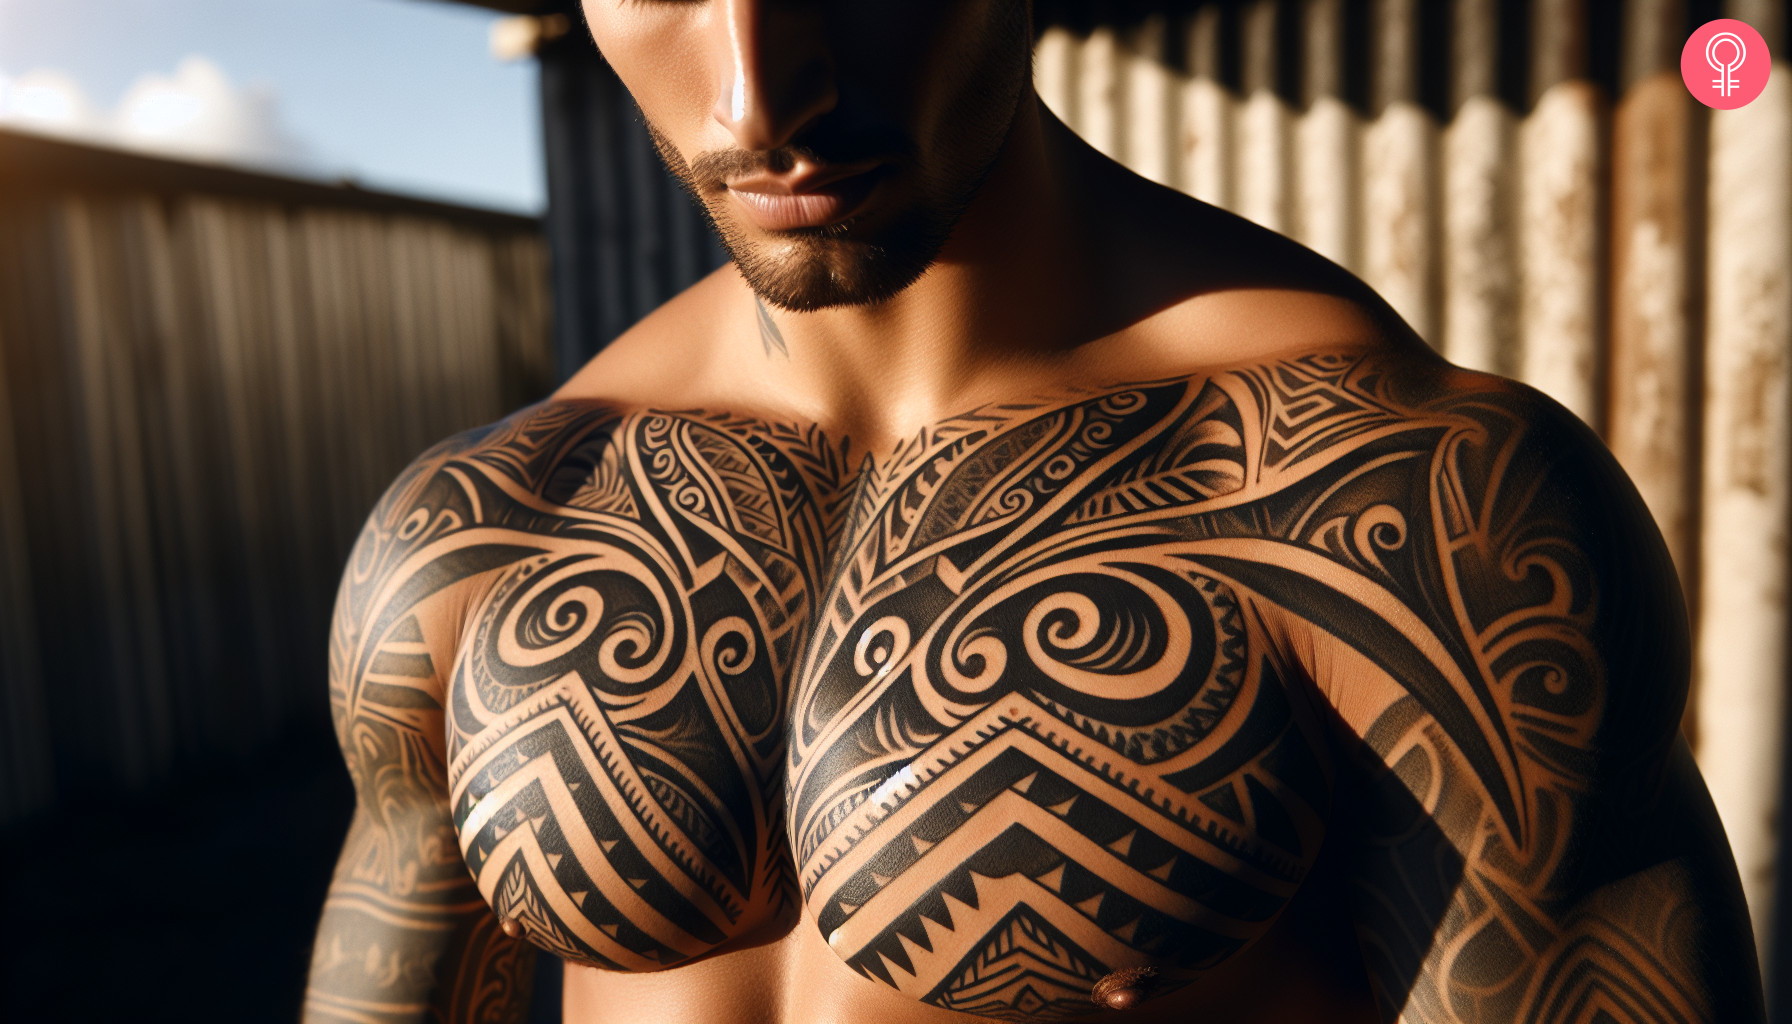 Maori chest tattoo on a man